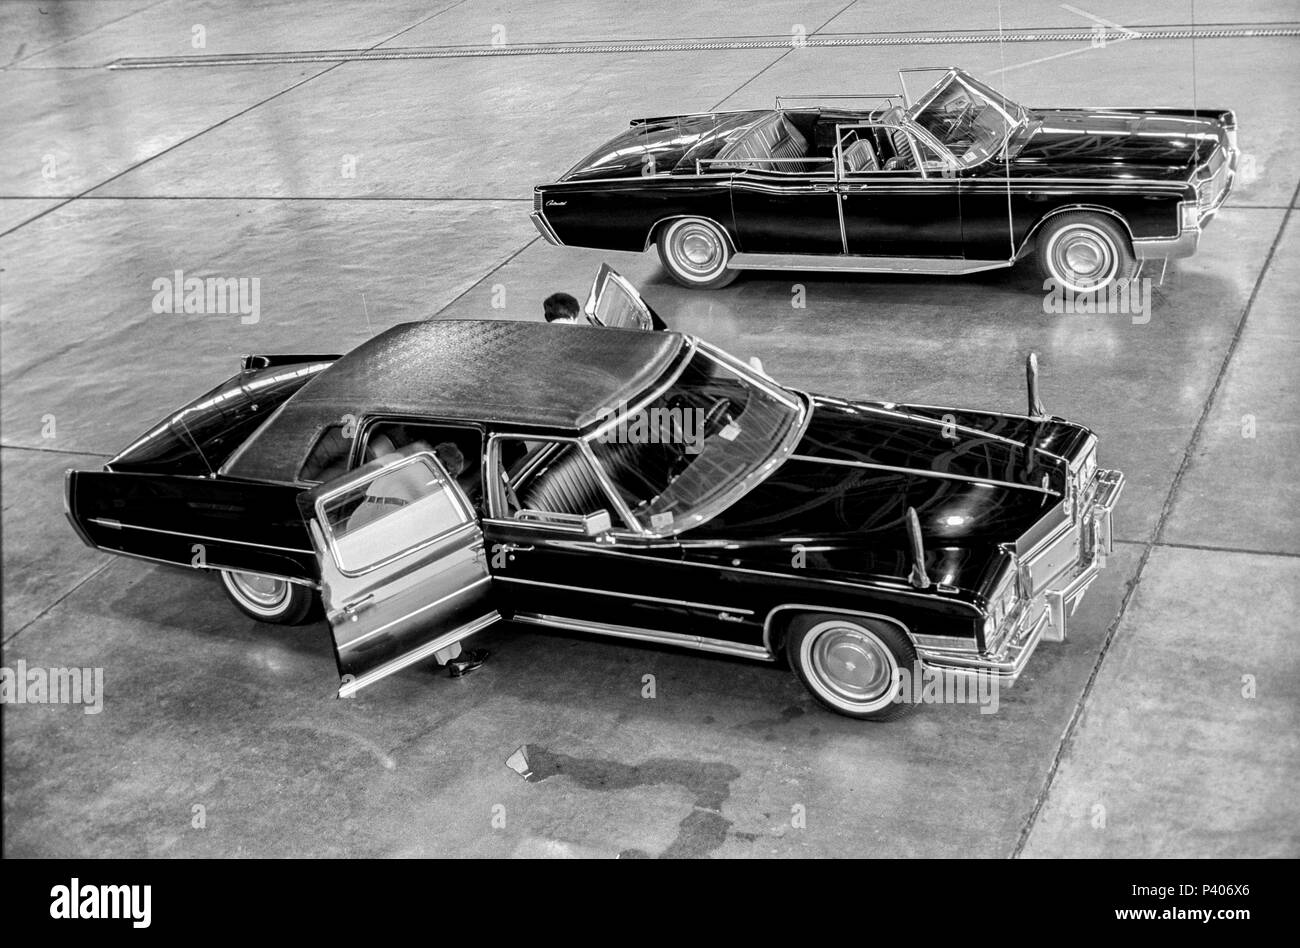 FORT SMITH, AR, USA - 10 août 1975 -- Les agents des services secrets d'examiner la Cadillac limosine présidentielle dans un hangar d'avions militaires alors que le président Gerald R. Ford tours un nouveau centre d'accueil des réfugiés vietnamiens à Fort Chaffee, AR. Banque D'Images